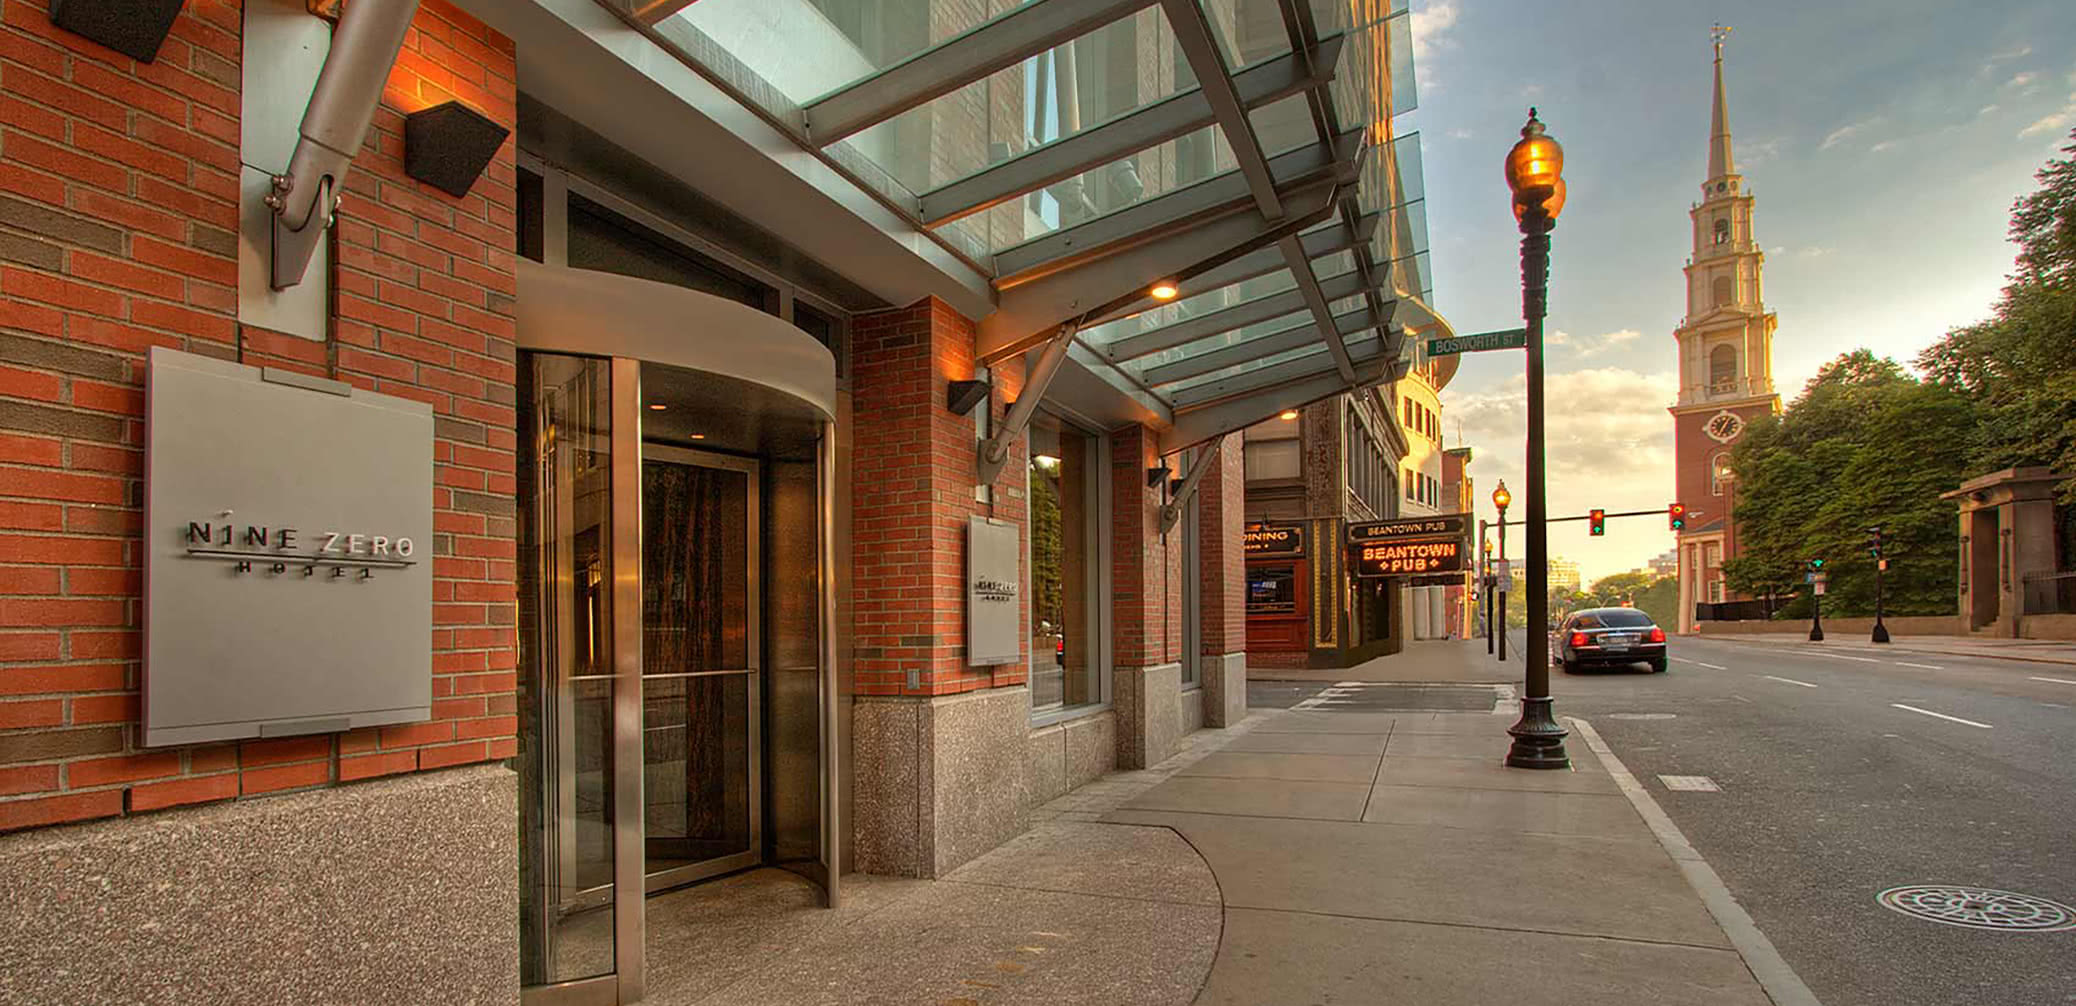 the-best-loyalty-points-hotels-in-boston-ihg-vs-marriott-bonvoy-hyatt-hilton